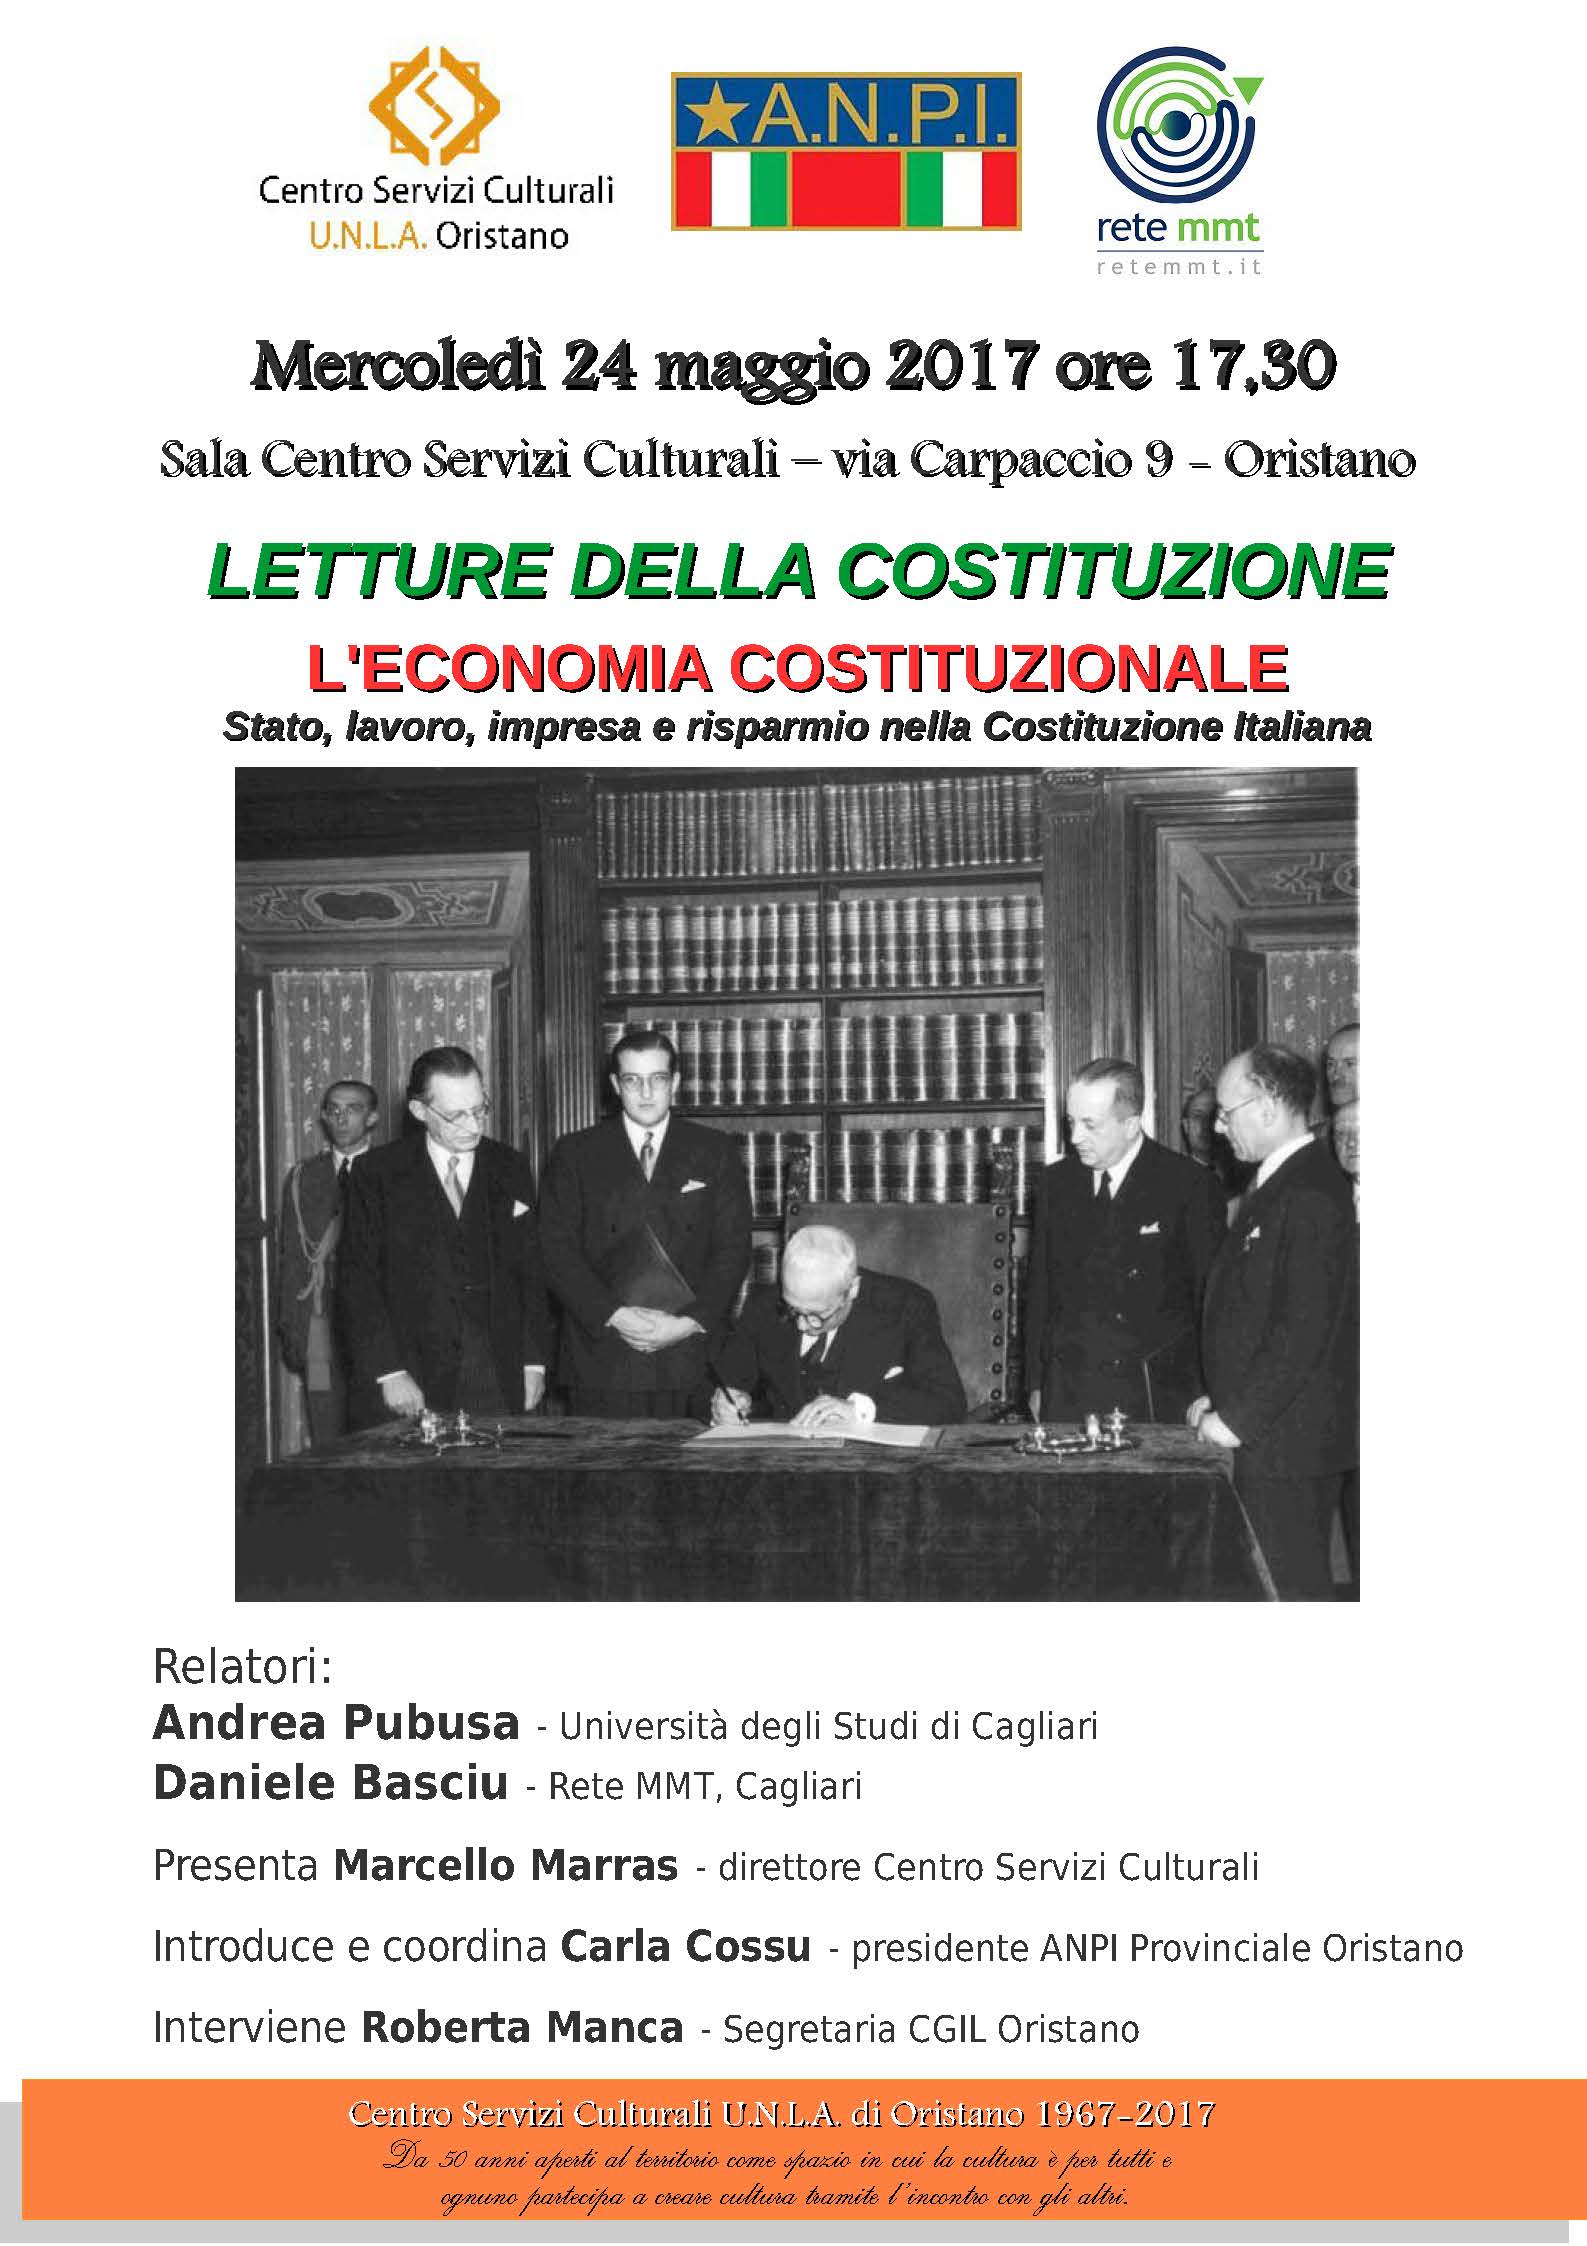 L'economia costituzionale - Stato, lavoro, impresa e risparmio nella Costituzione Italiana